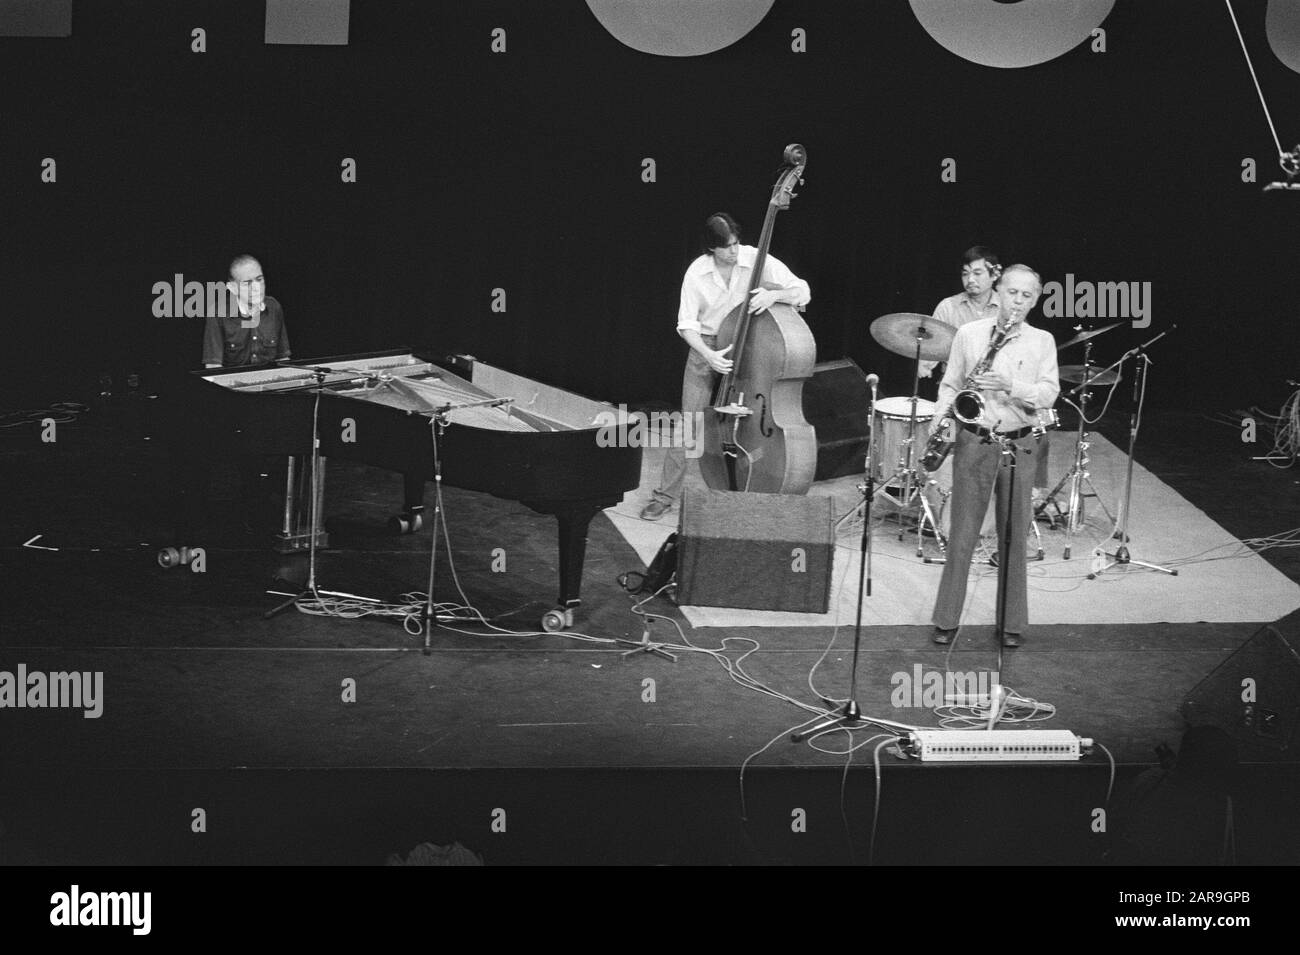 Internationales Jazzy Festival im Meervaart in Amsterdam 13.12.14. August Warne Marsh Quartet. Von l. n.r: SAL Mosca, Klavier; Frank Canino, Bass; Taro Akomoto, Schlagzeug und Warne Marsh, Tenorsaxophon. August 1982; Stockfoto